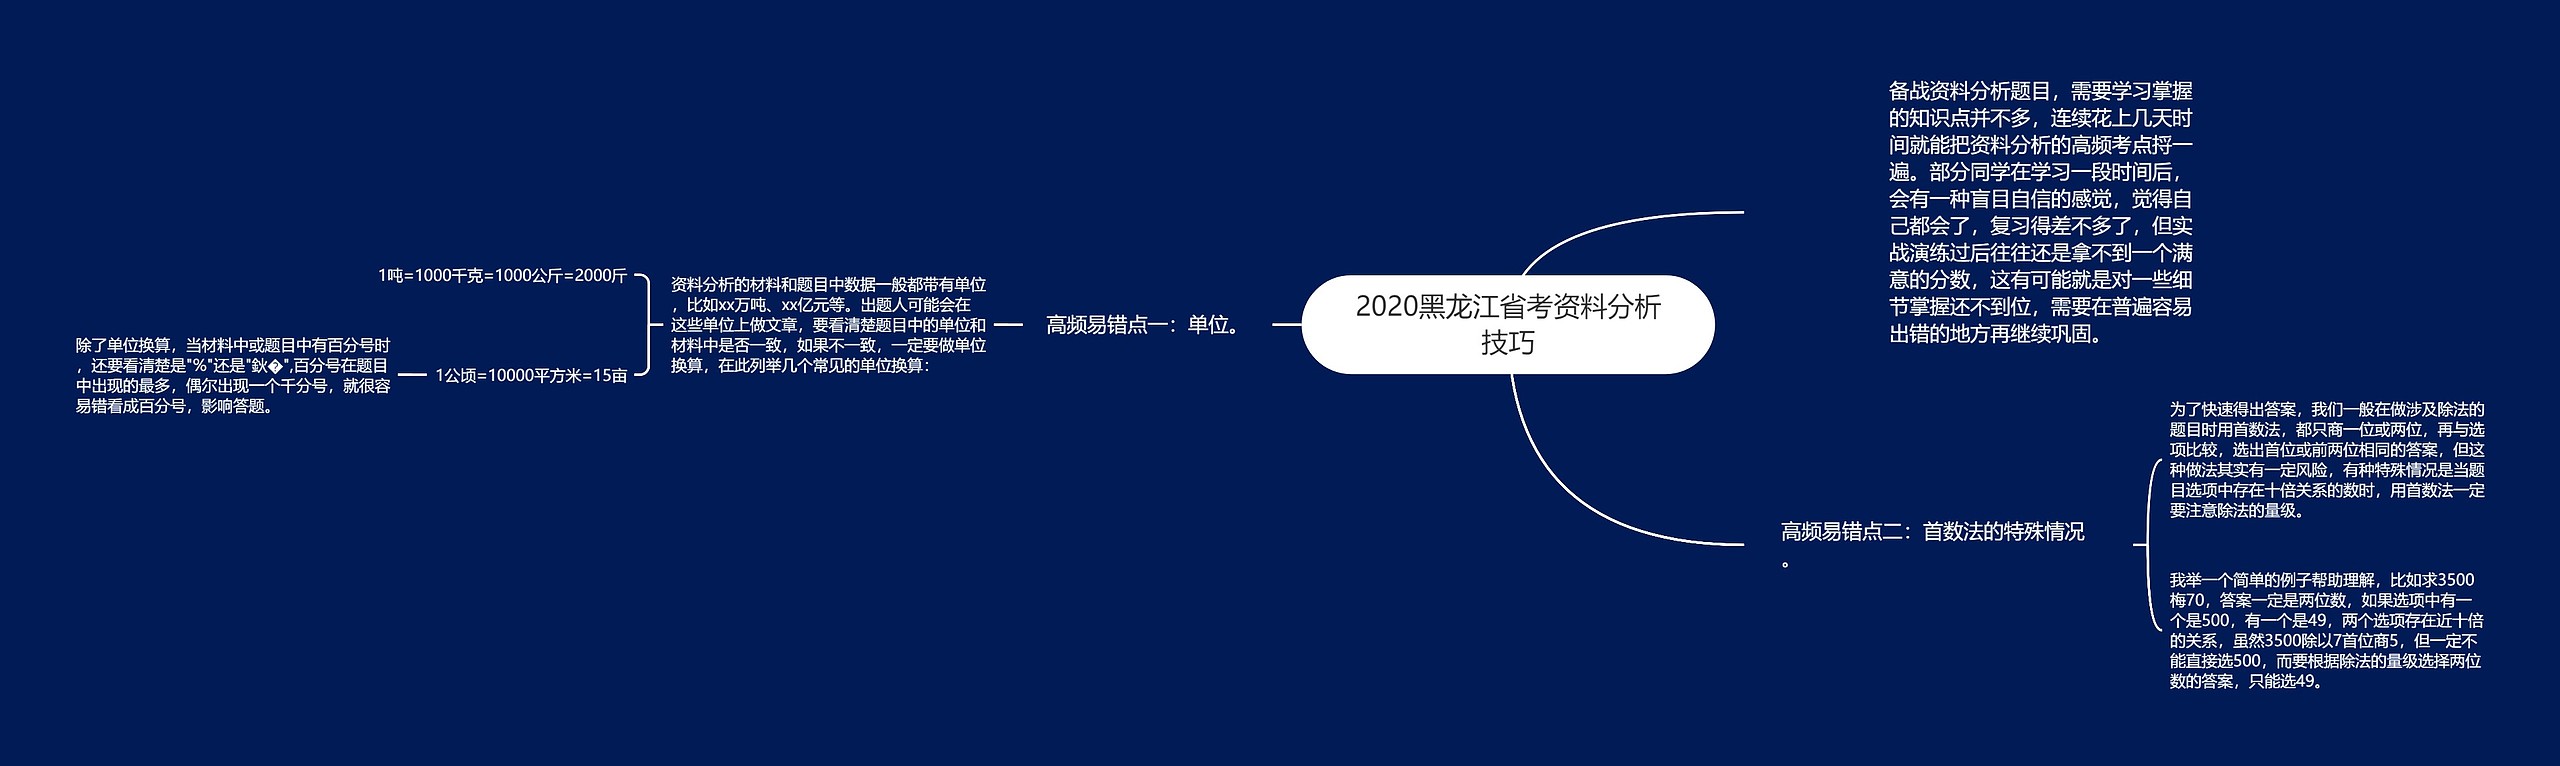 2020黑龙江省考资料分析技巧